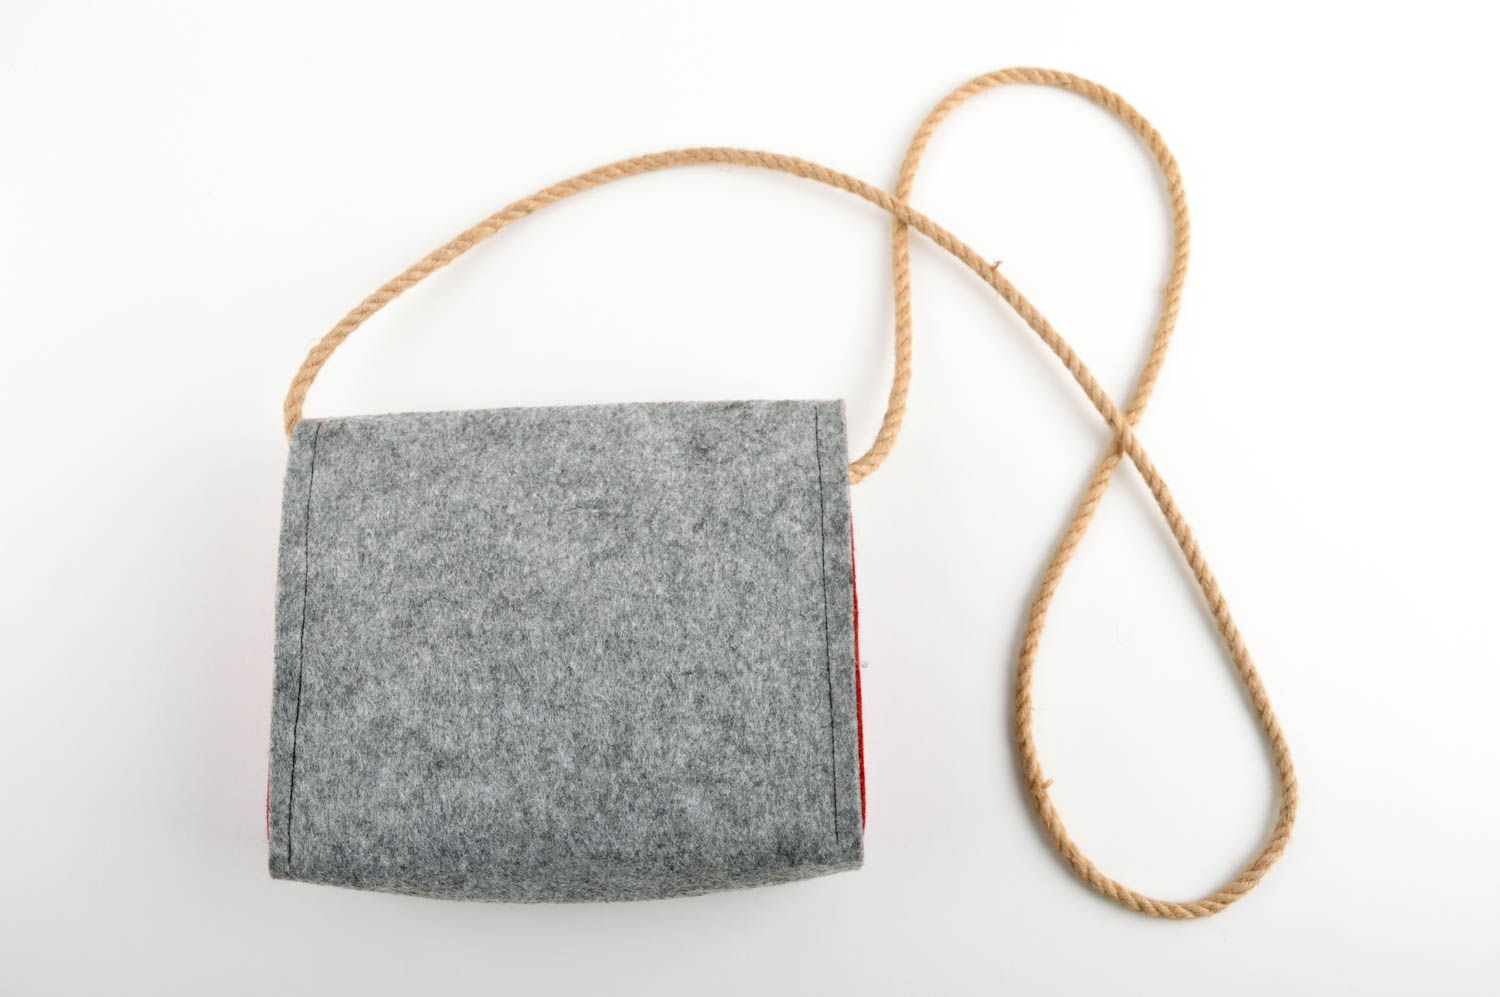 Handmade designer bag shoulder bag fashion accessories for girls gifts for her photo 2